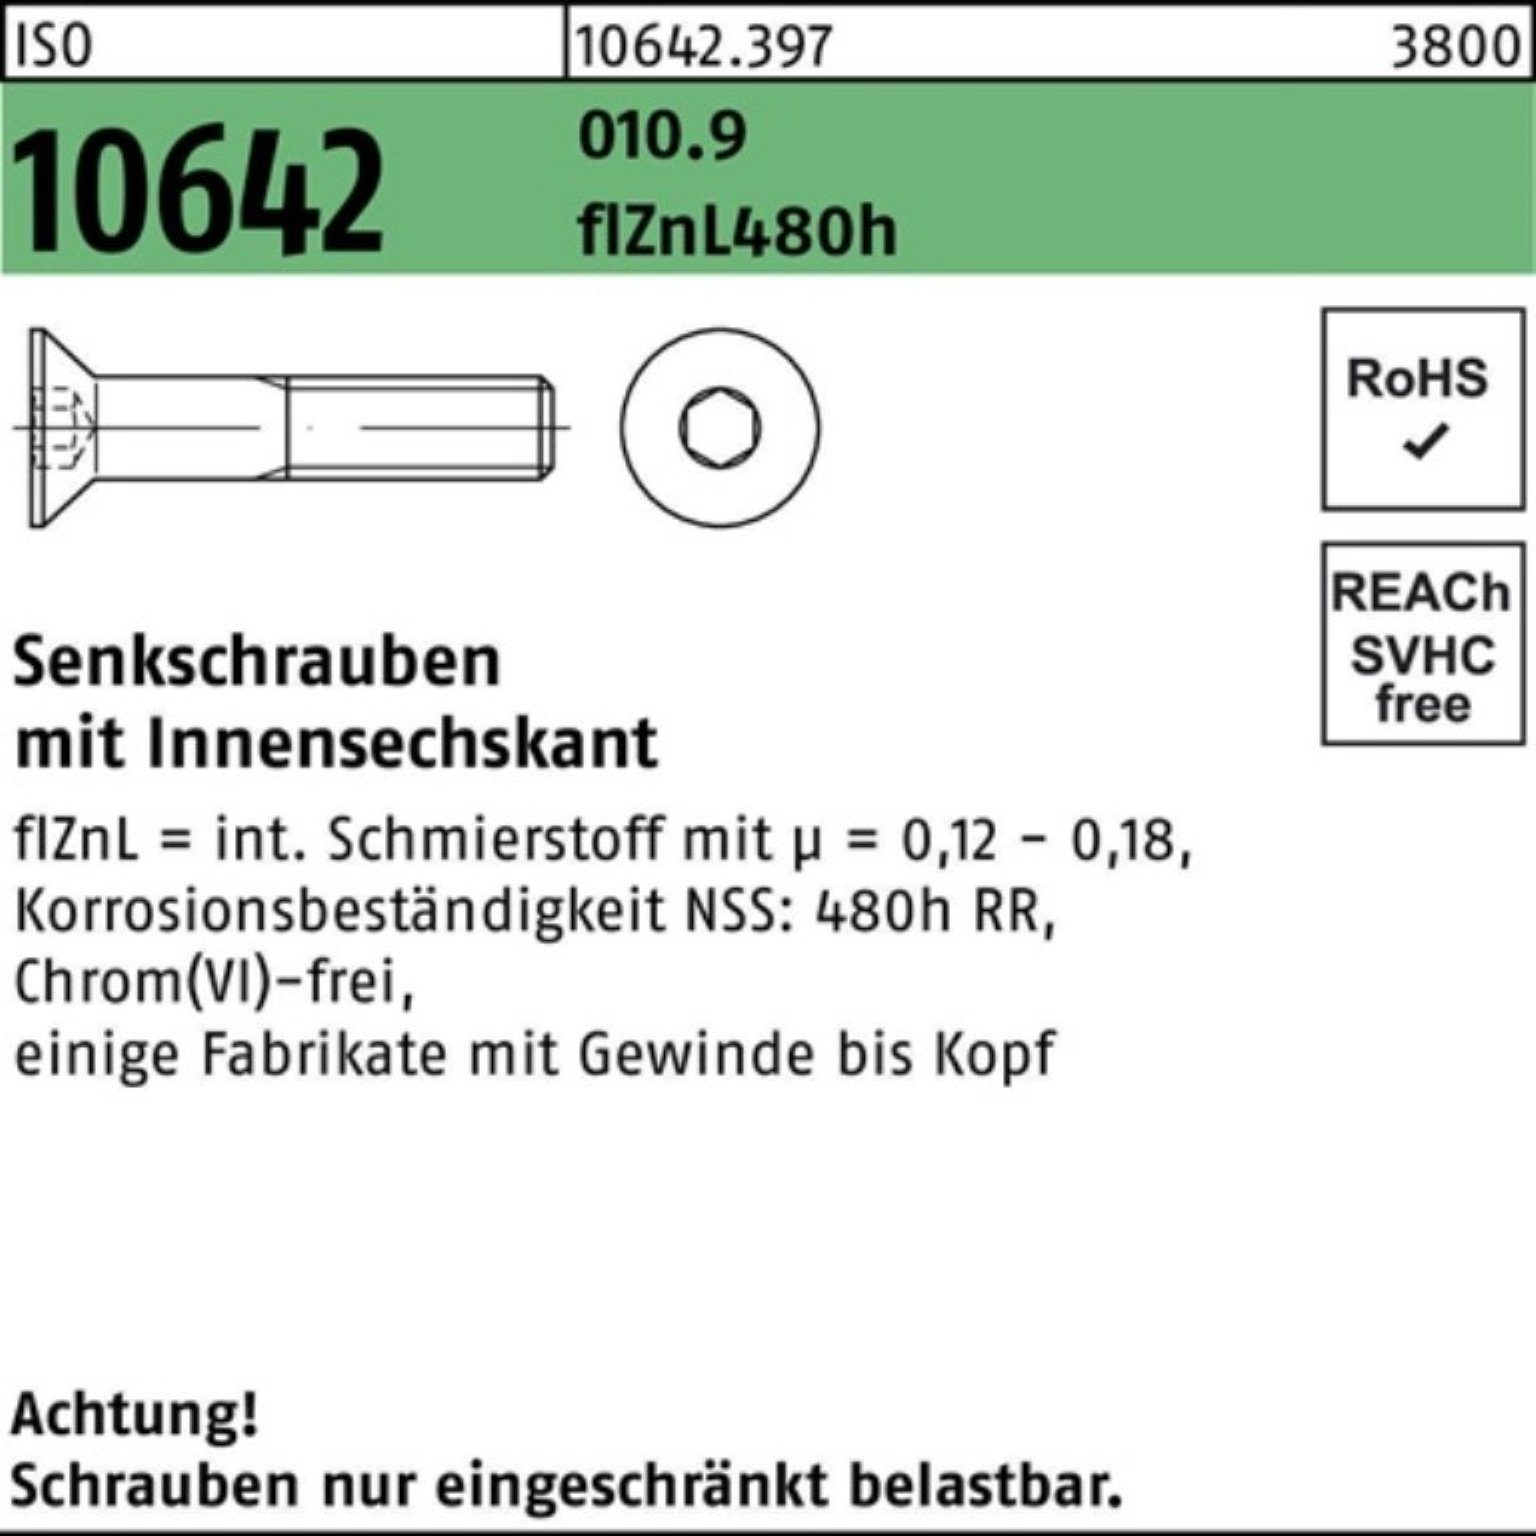 Senkschraube Innen-6kt 100er 10642 Pack ISO zi Reyher Senkschraube M10x45 010.9 480h flZnL